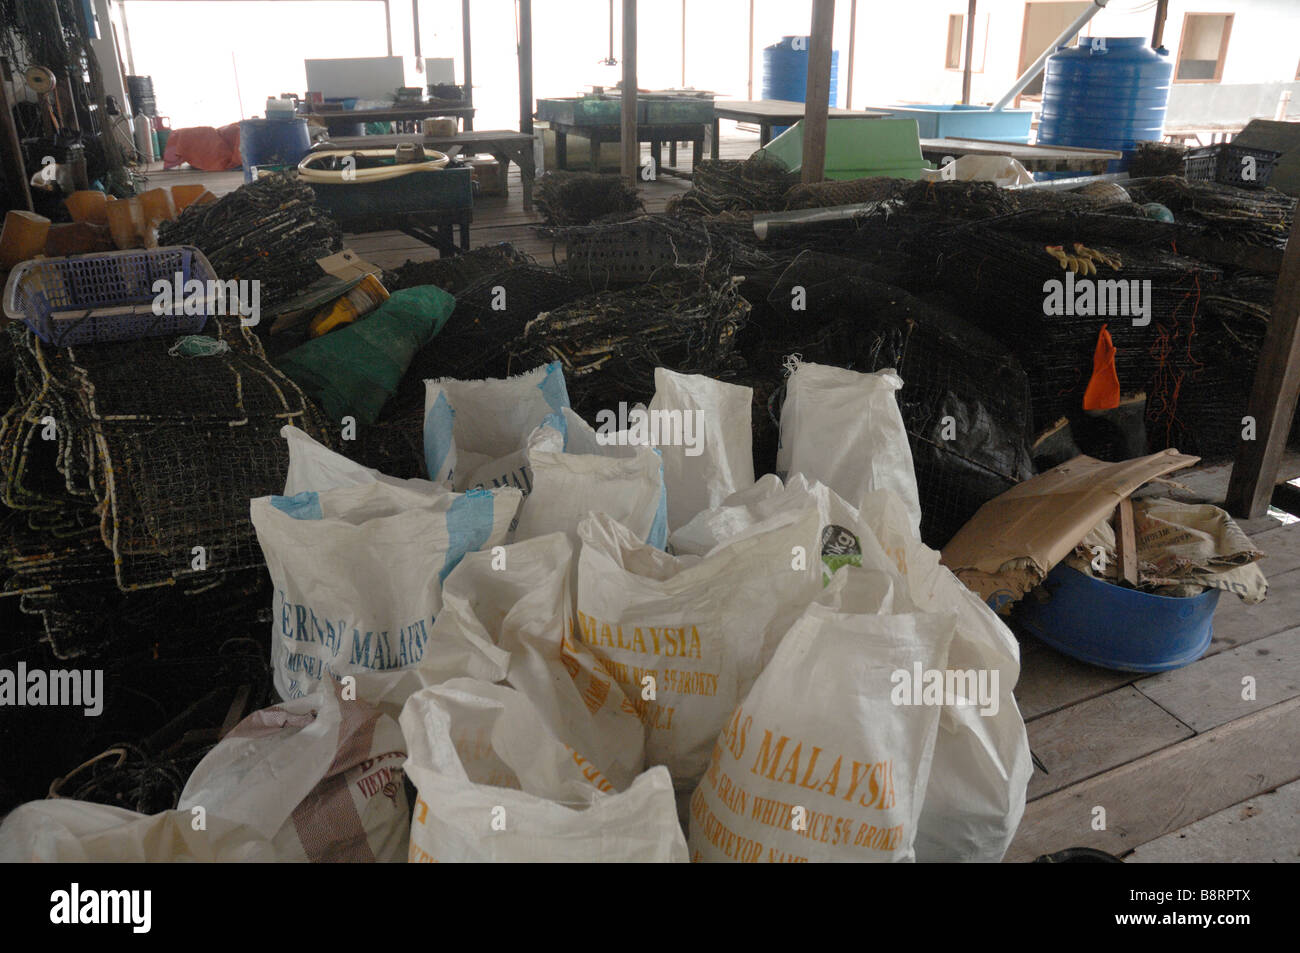 Japanese pearl farm Darvel Bay Sulu Sea Malaysia Sout east Asia Stock Photo